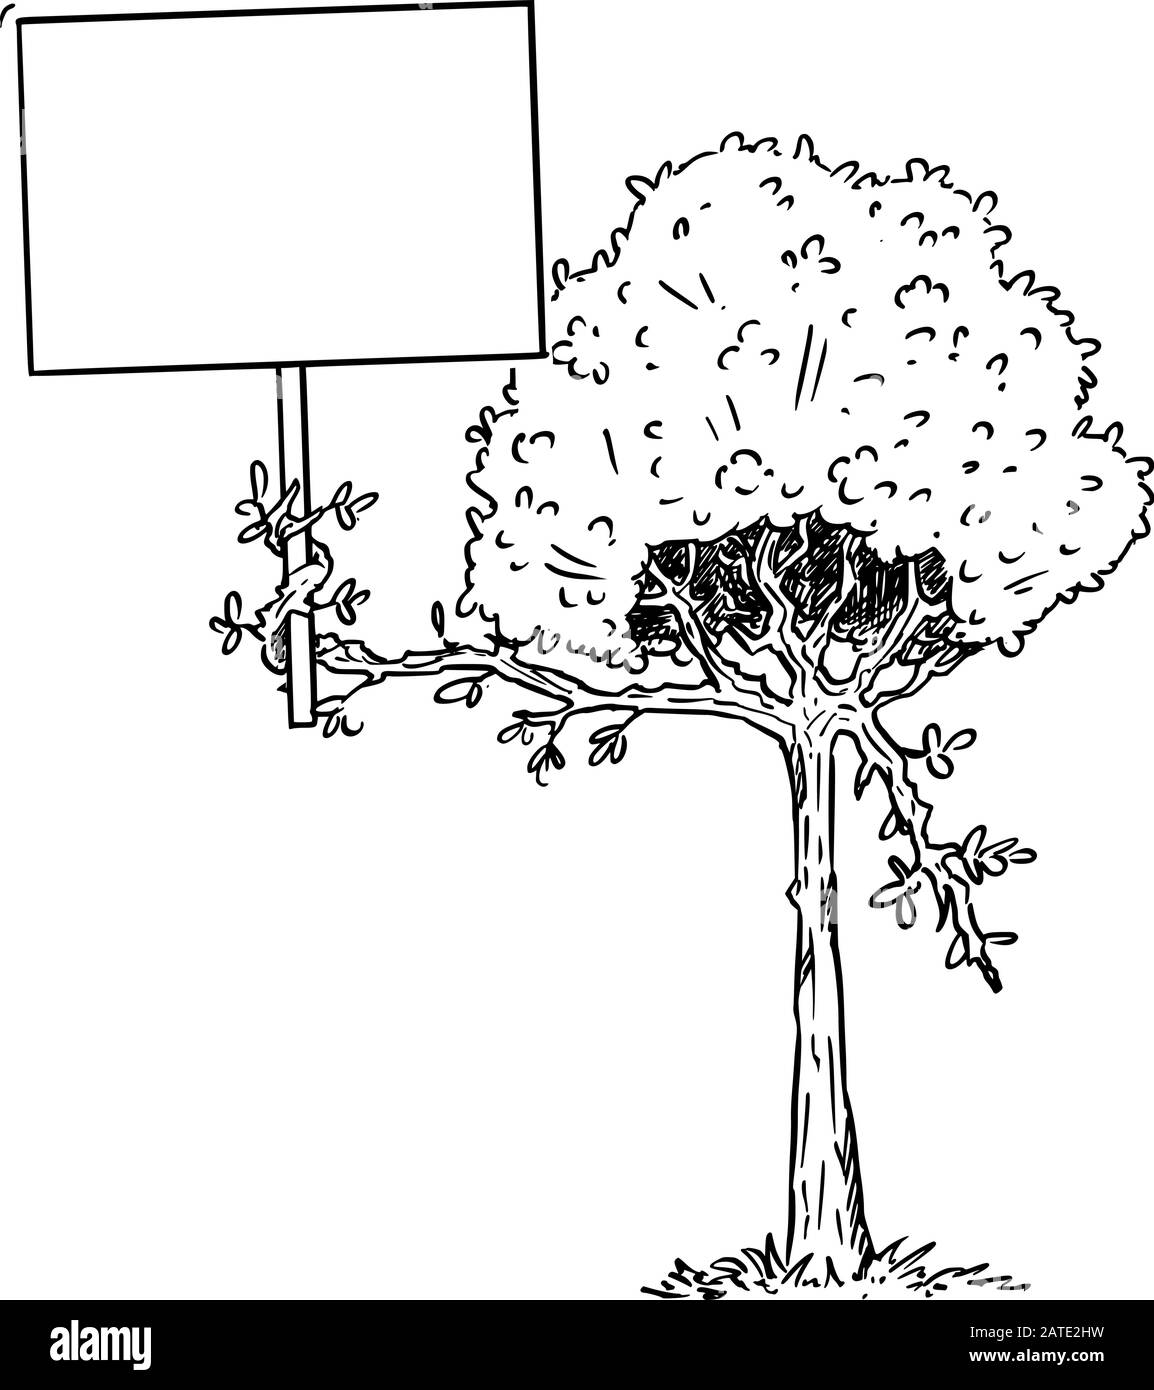 Illustration vectorielle du personnage de plante d'arbre à fleurs de dessin animé tenant le signe vide dans la branche avec les feuilles. Publicité écologique ou de nature ou conception marketing. Illustration de Vecteur